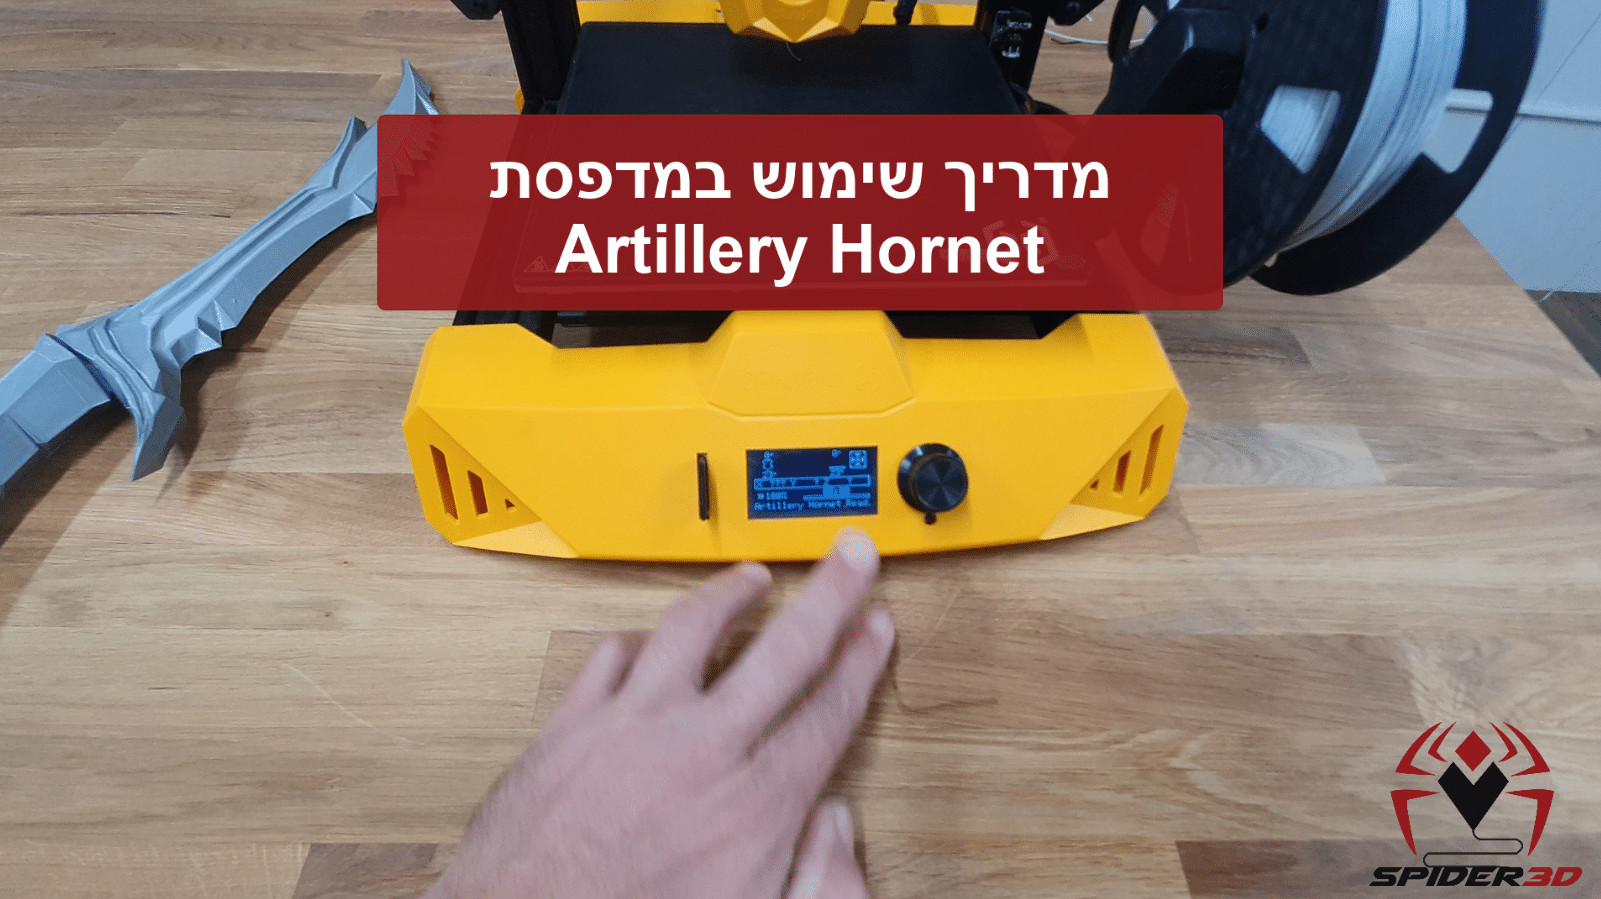 מדריך שימוש מדפסת תלת מימד ארטילרי הורנט hornet